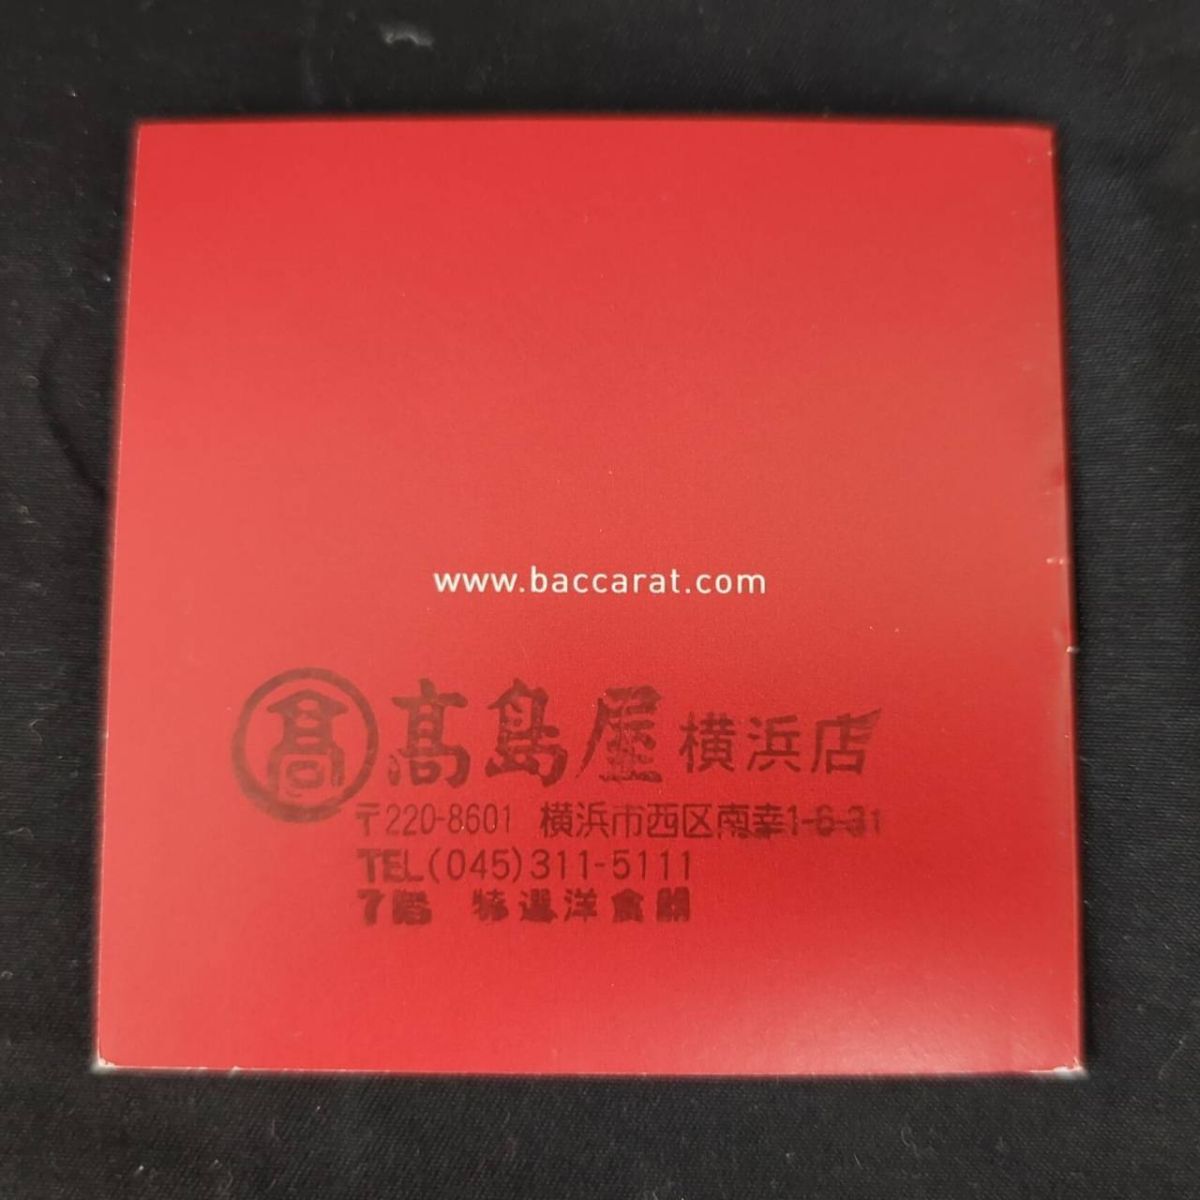 S330-H11-1883 Baccarat バカラ ローザ ペアロックグラス 2015年限定 箱有 食器 口径約9.7cm 高さ約8.5cm_画像8